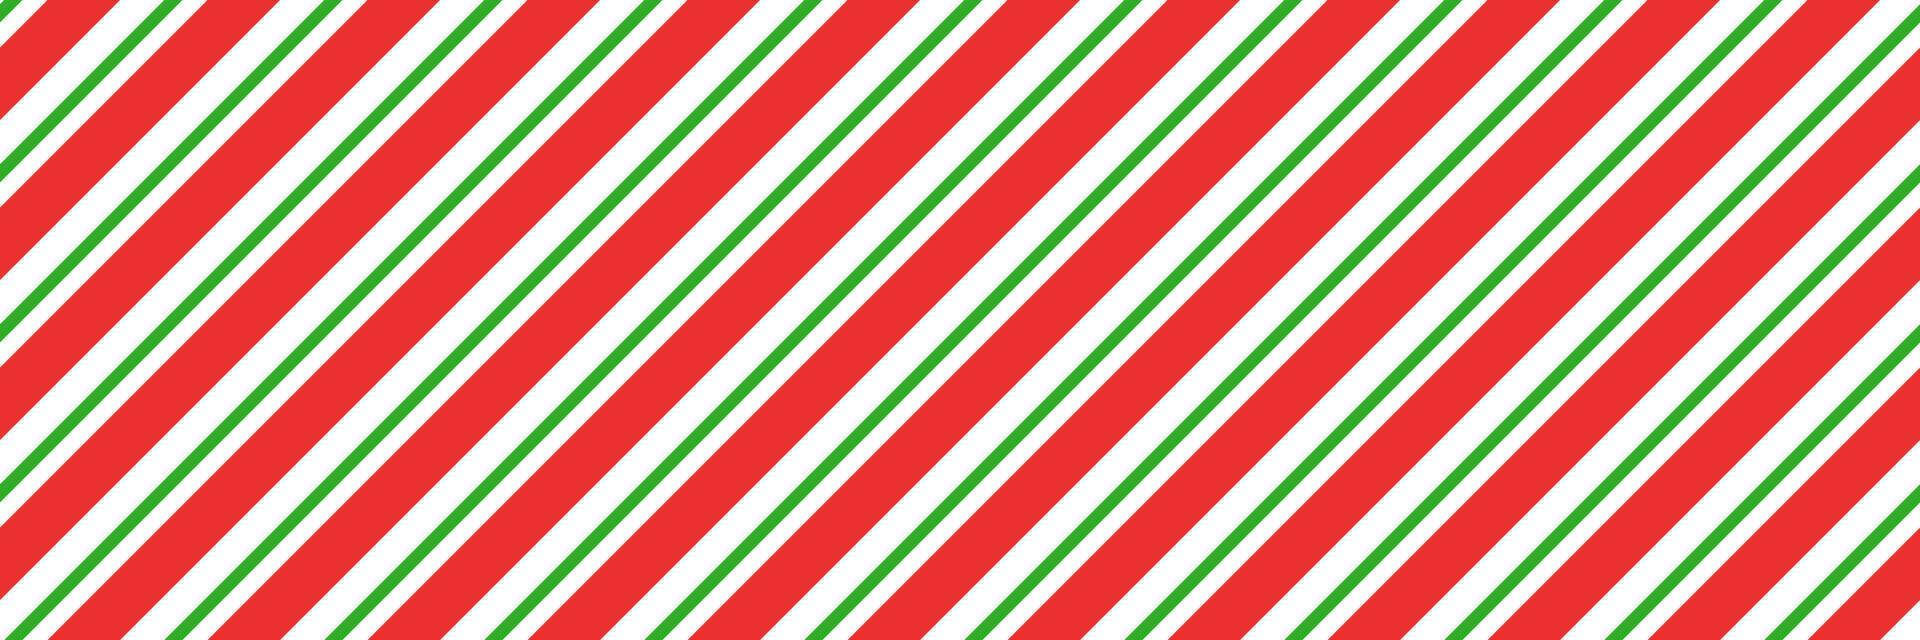 gestreiftes nahtloses muster der weihnachtszuckerstange. Weihnachtscandycane-Hintergrund mit roten und grünen Streifen. Pfefferminz-Karamell-Diagonaldruck. weihnachtliche traditionelle verpackungstextur. Vektor-Illustration vektor